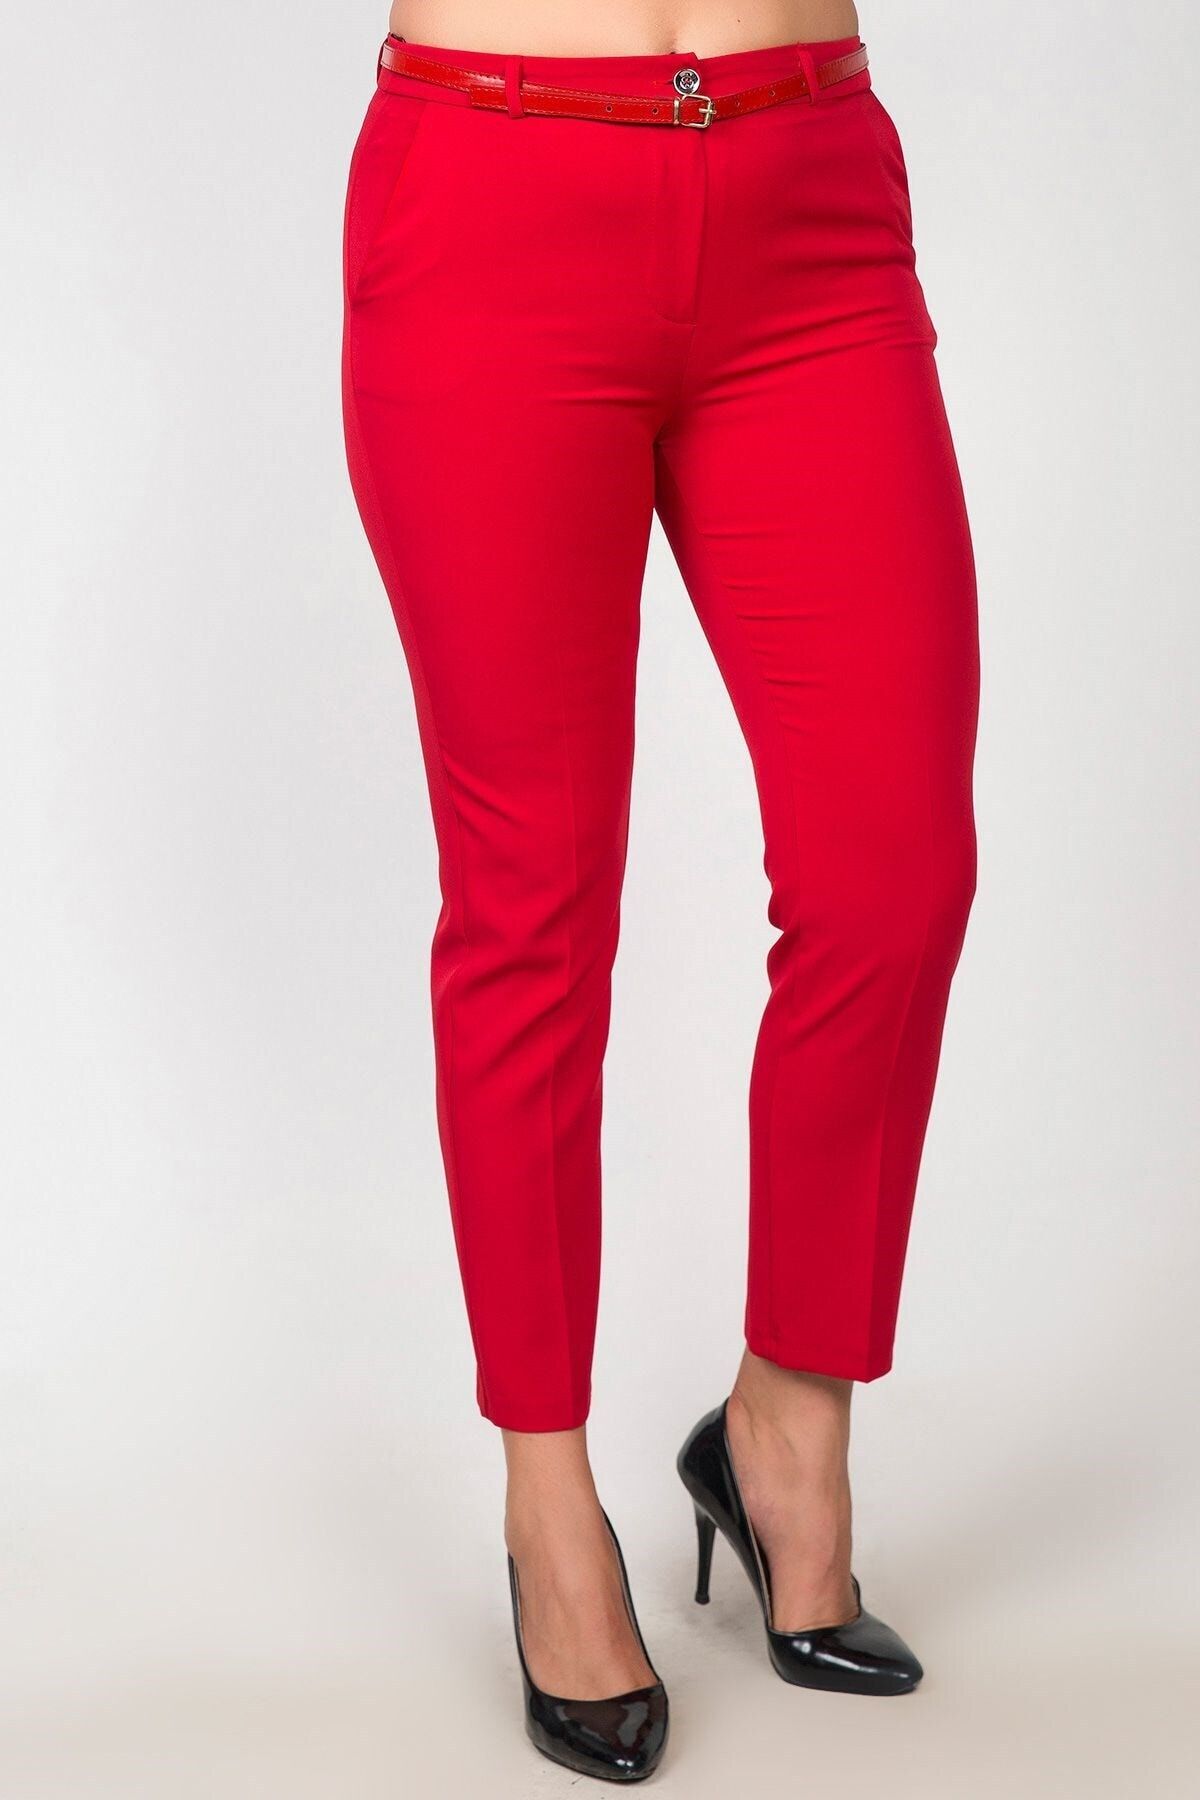 Womenice Kadın Kırmızı Yüksek Bel Klasik Kumaş Büyük Beden Pantolon